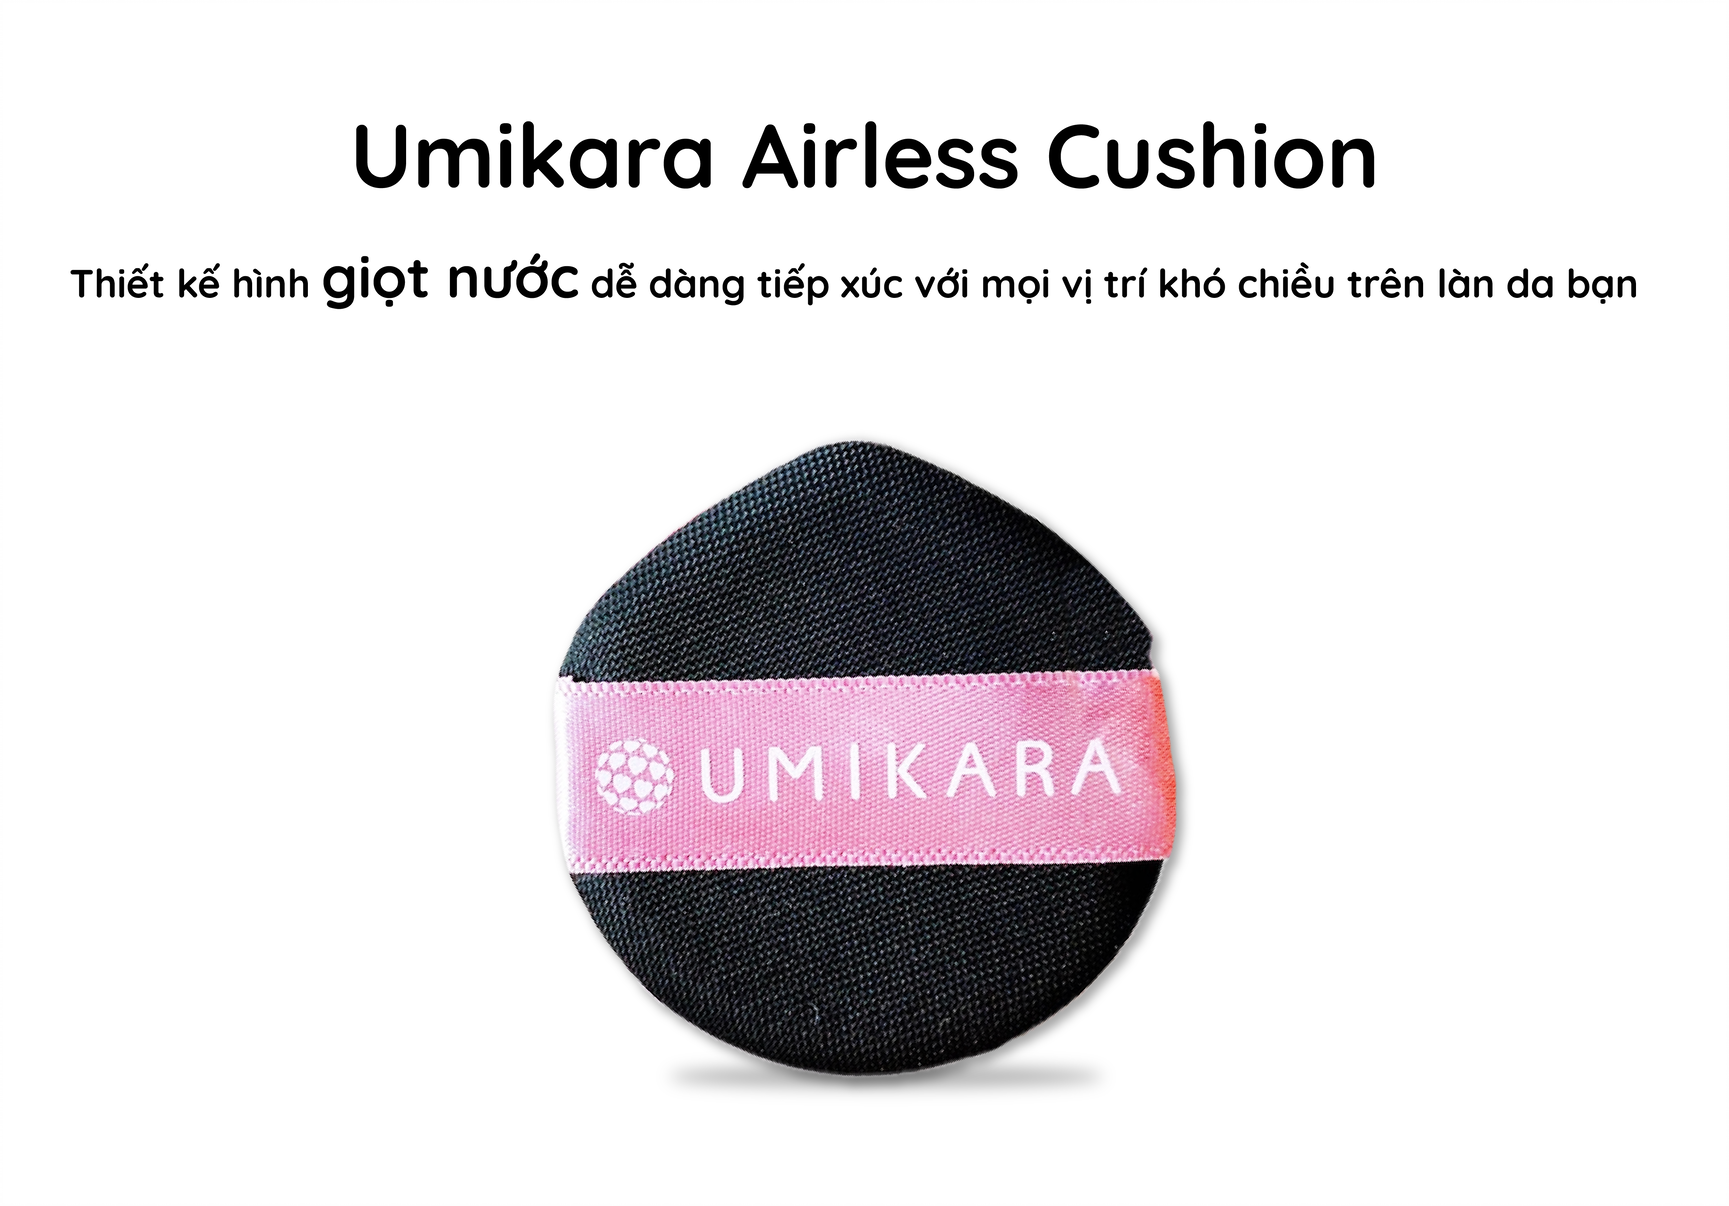 Phấn Nước Trang Điểm Kiểm Soát Nhờn Aishitoto Umikara Airless Cushion Foundation Nhiều Tone Màu